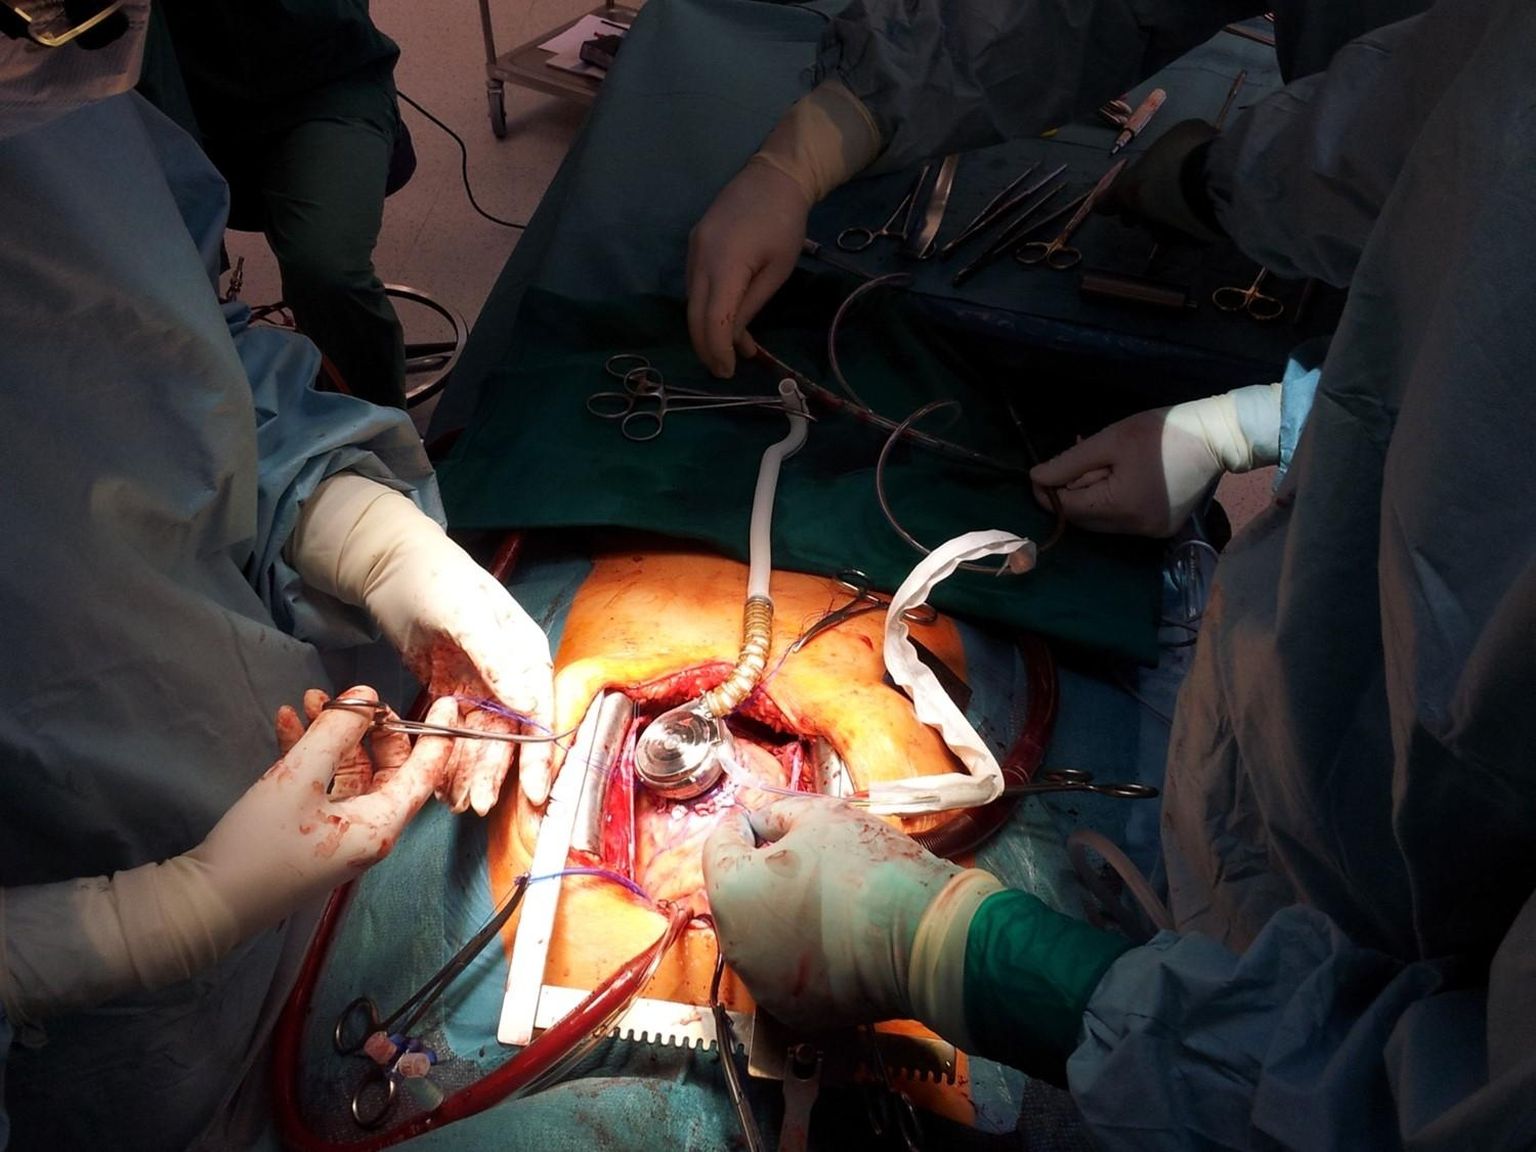 Vaade lõikusele, kus kirurg Arno Ruusalepp paigaldab patsiendi südame külge pumba, mis aitab südamelihasel tööd teha. Ilma selleta ei õnnestuks paljudel patsientidel siirdamiseni vastu pidada.